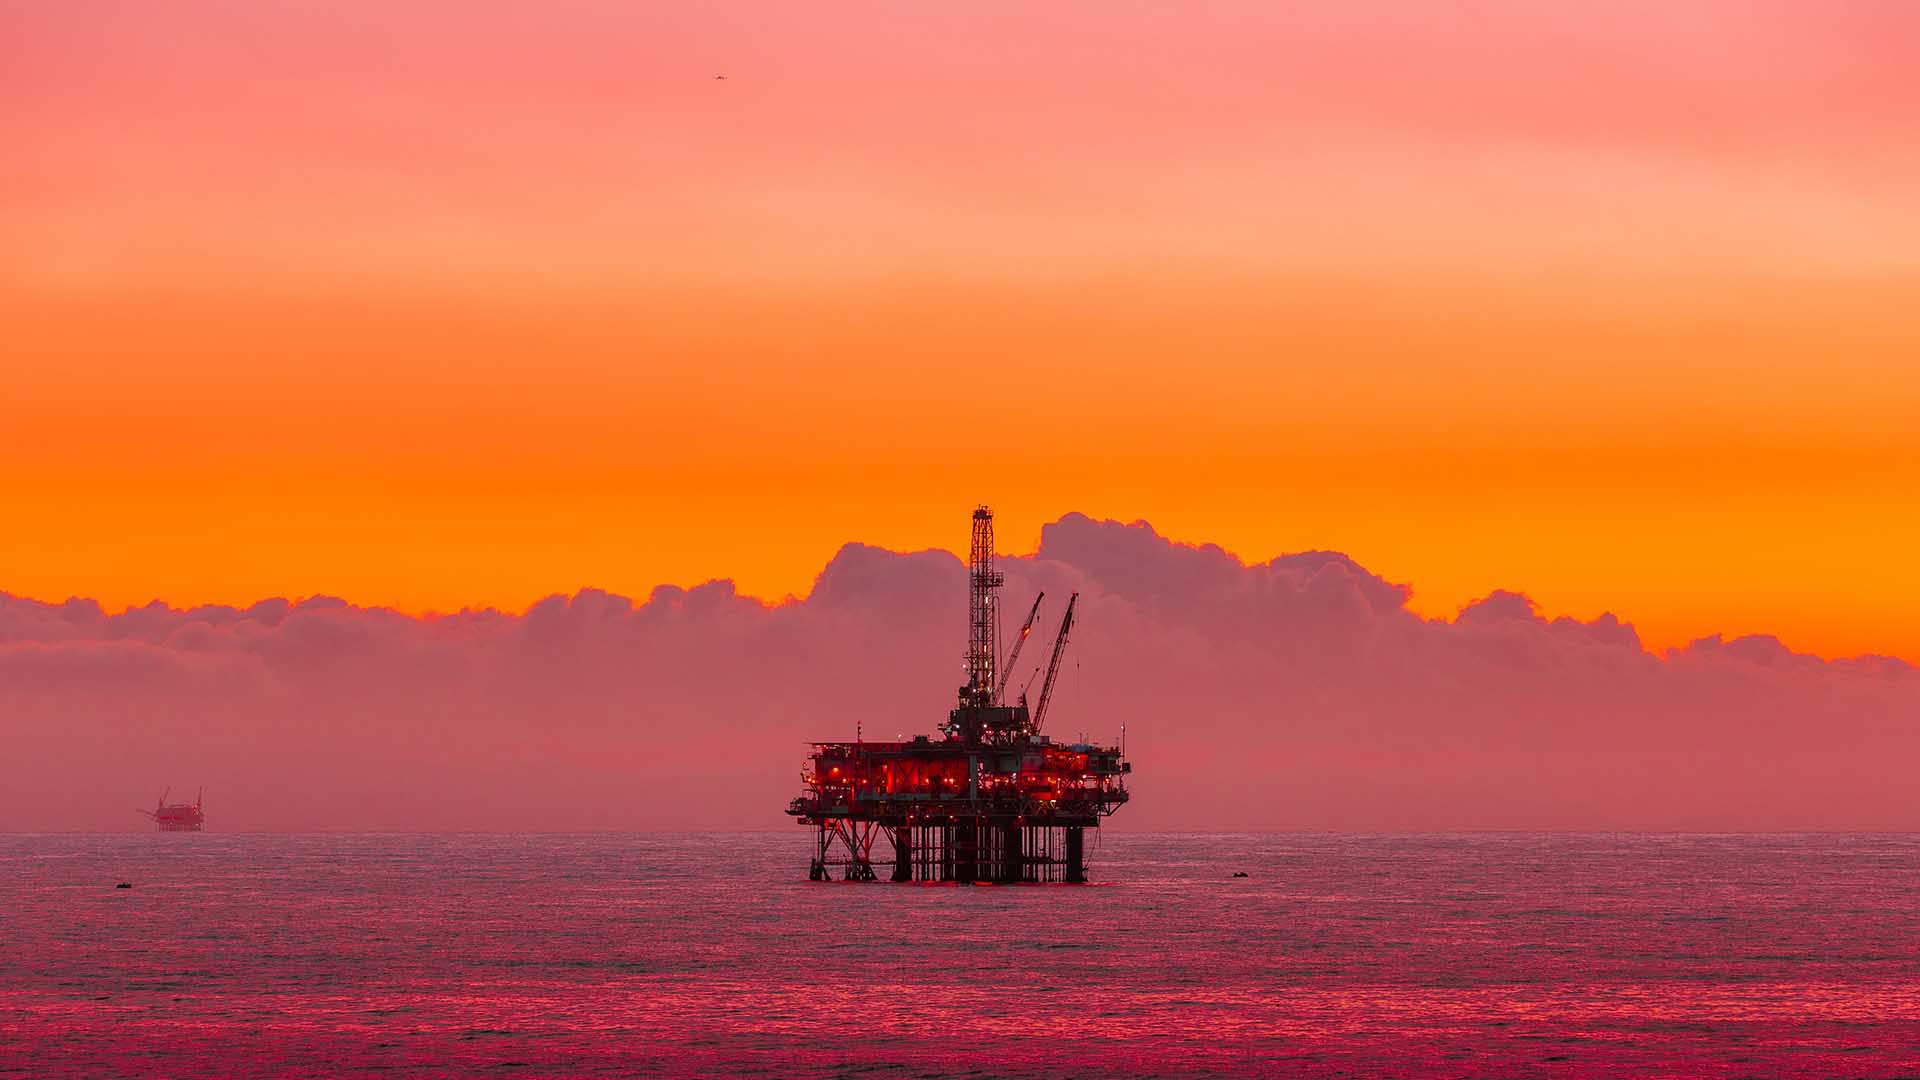 طبق گزارش مک کینزی، یک شرکت نفت و گاز فراساحلی از راهکار نگهداری و تعمیرات پیش‌بینانه برای کاهش ۲۰ درصدی زمان توقف تجهیزات استفاده کرد که منجر به افزایش تولید بیش از ۵۰۰ هزار بشکه نفت در سال شد.